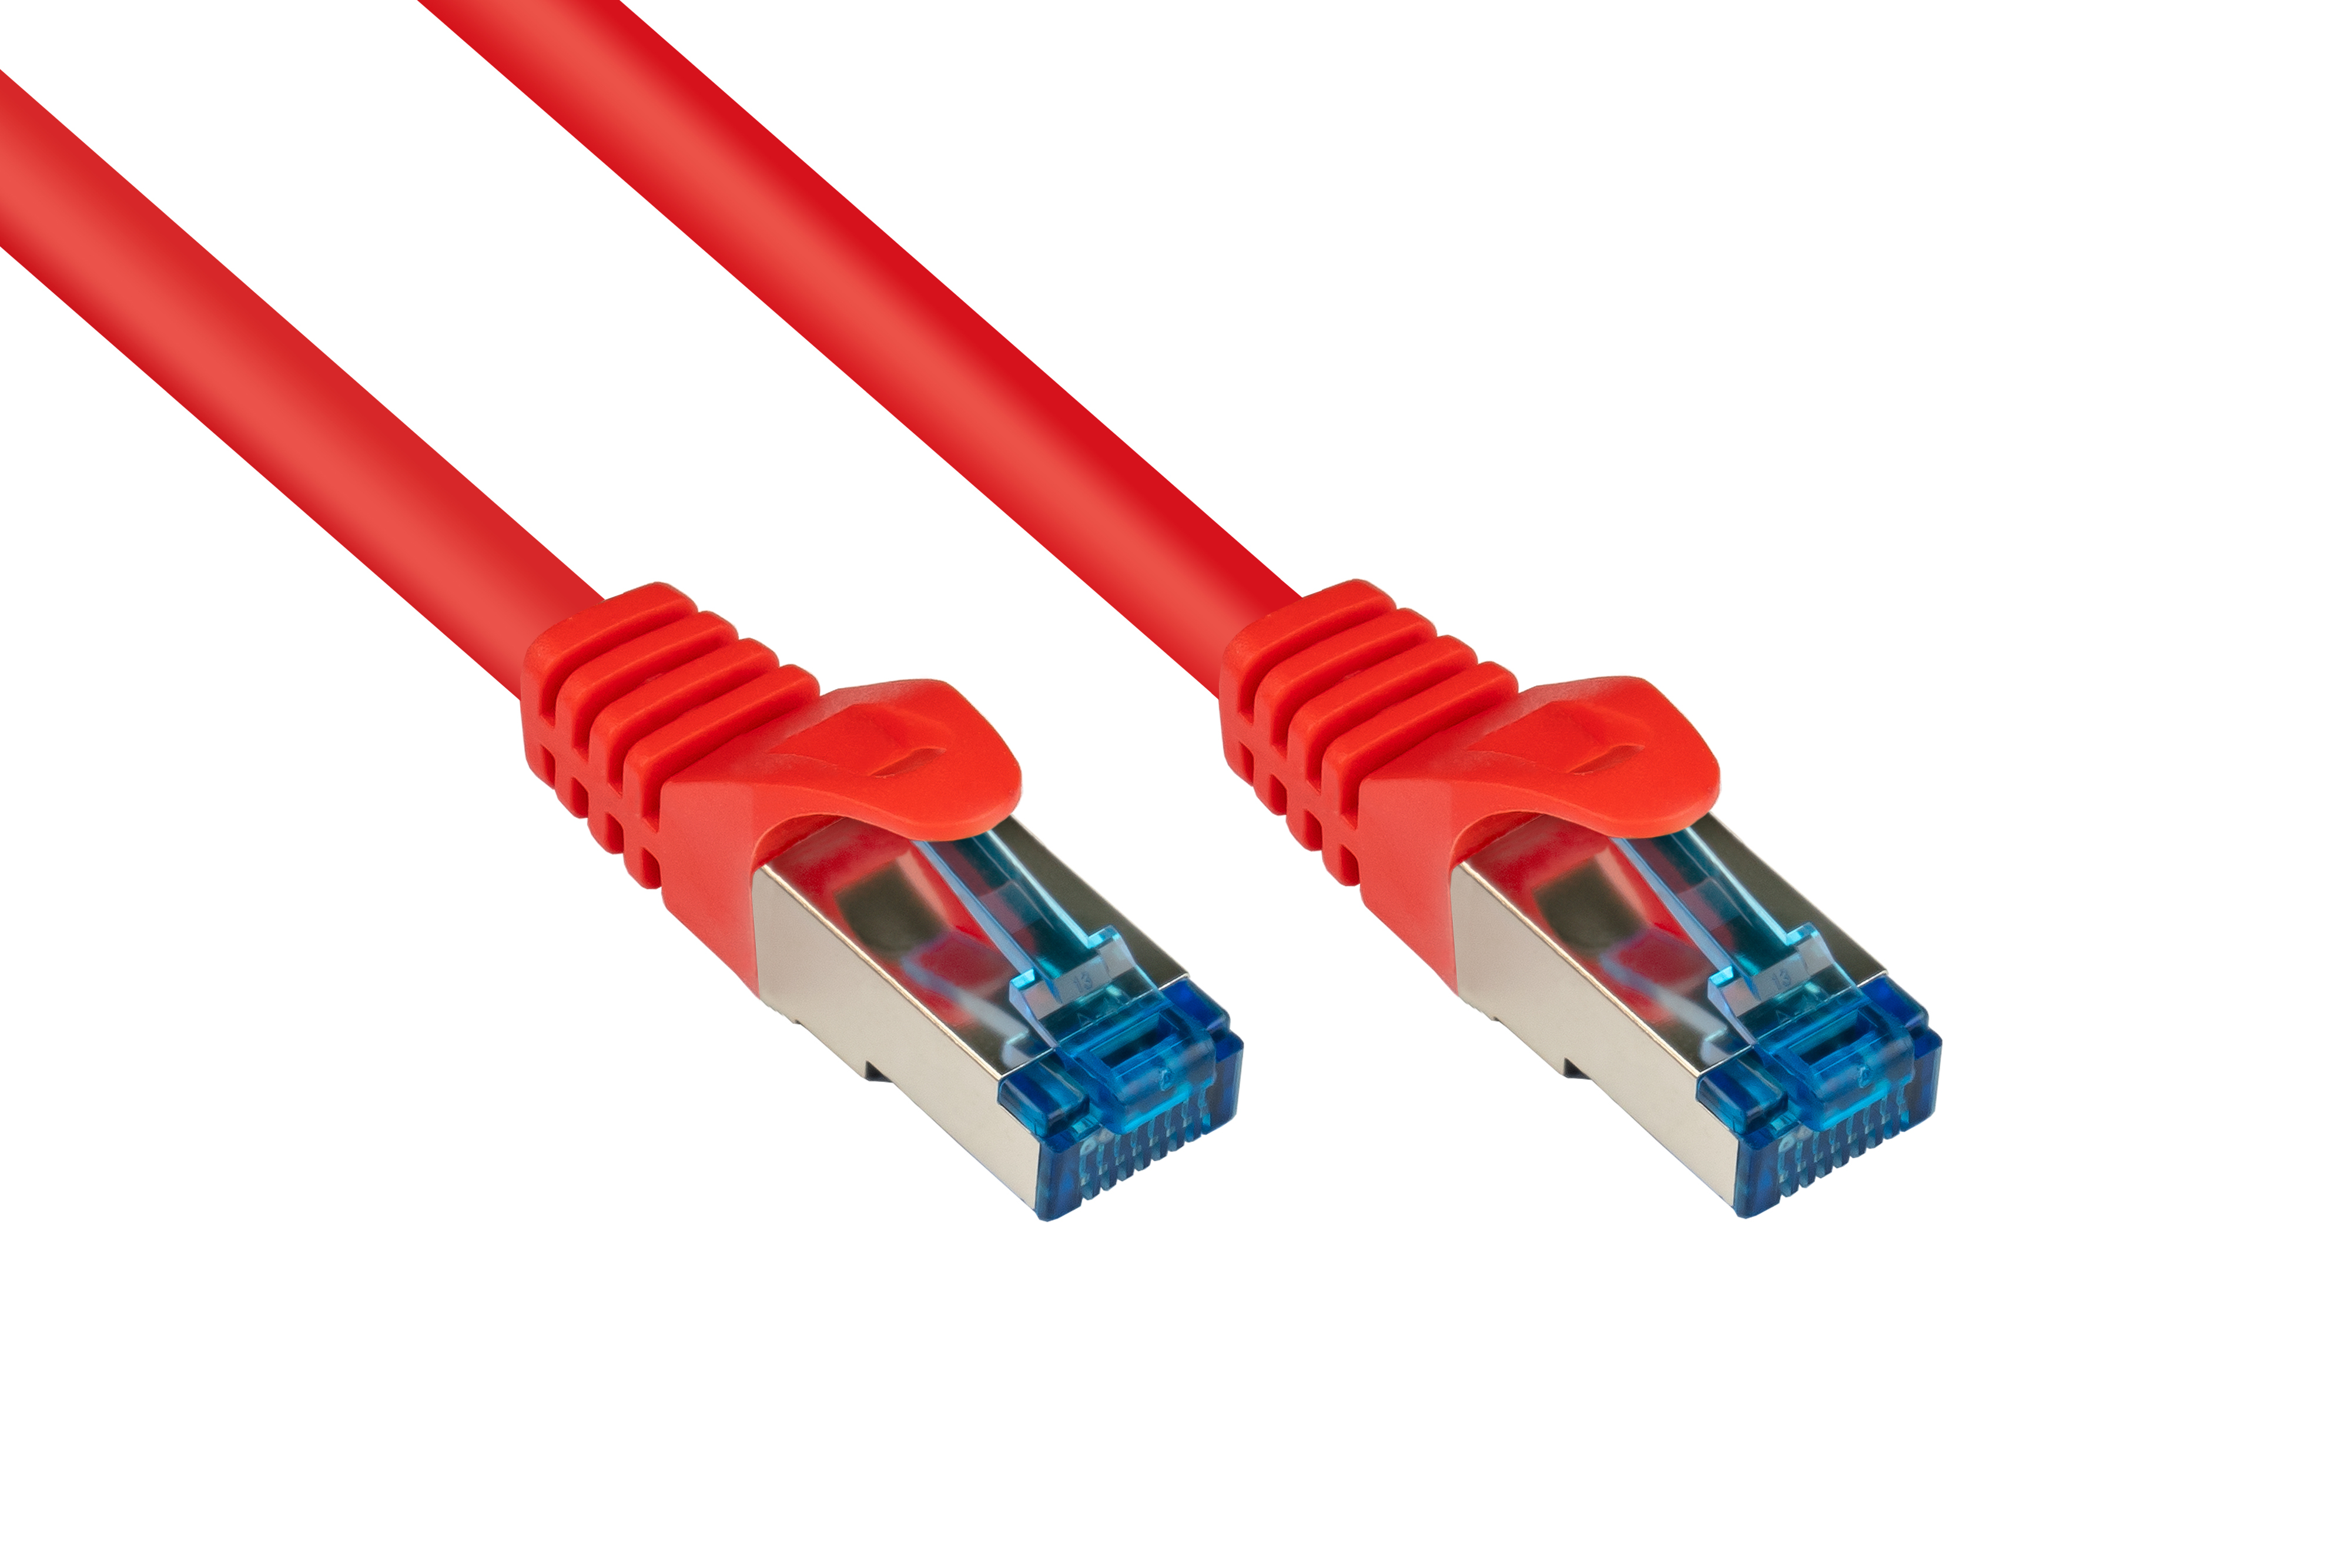 Netzwerkkabel, rot, m 500MHz, 30 S/FTP, PiMF, halogenfrei, KABELMEISTER